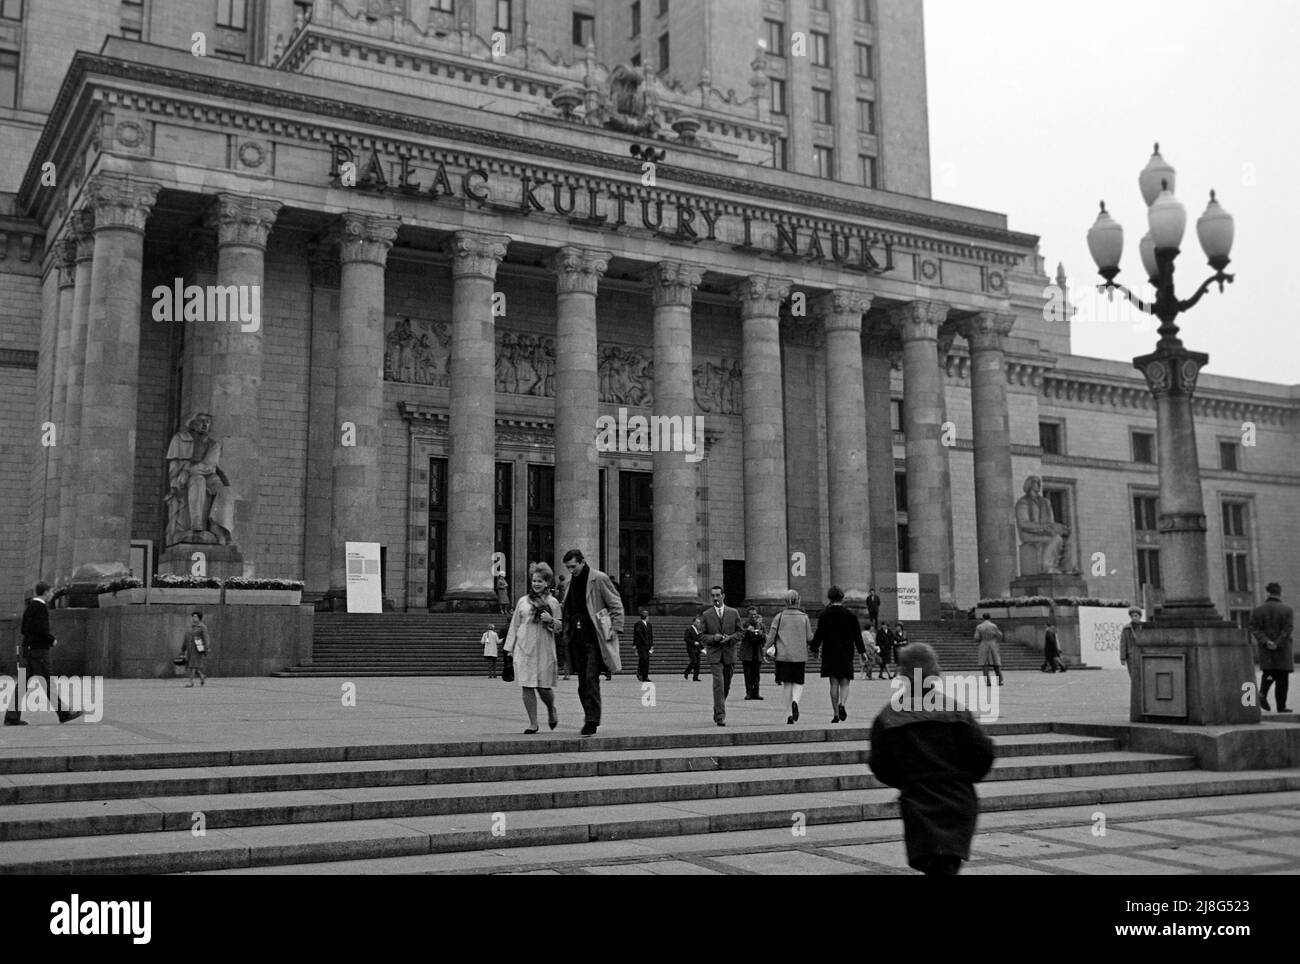 Der Kultur- und Wissenschaftspalast in Warschau, Woiwodschaft Masowien, 1967. Palast der Kultur und Wissenschaft in Warschau, Vovoidschiff Masowia, 1967. Stockfoto